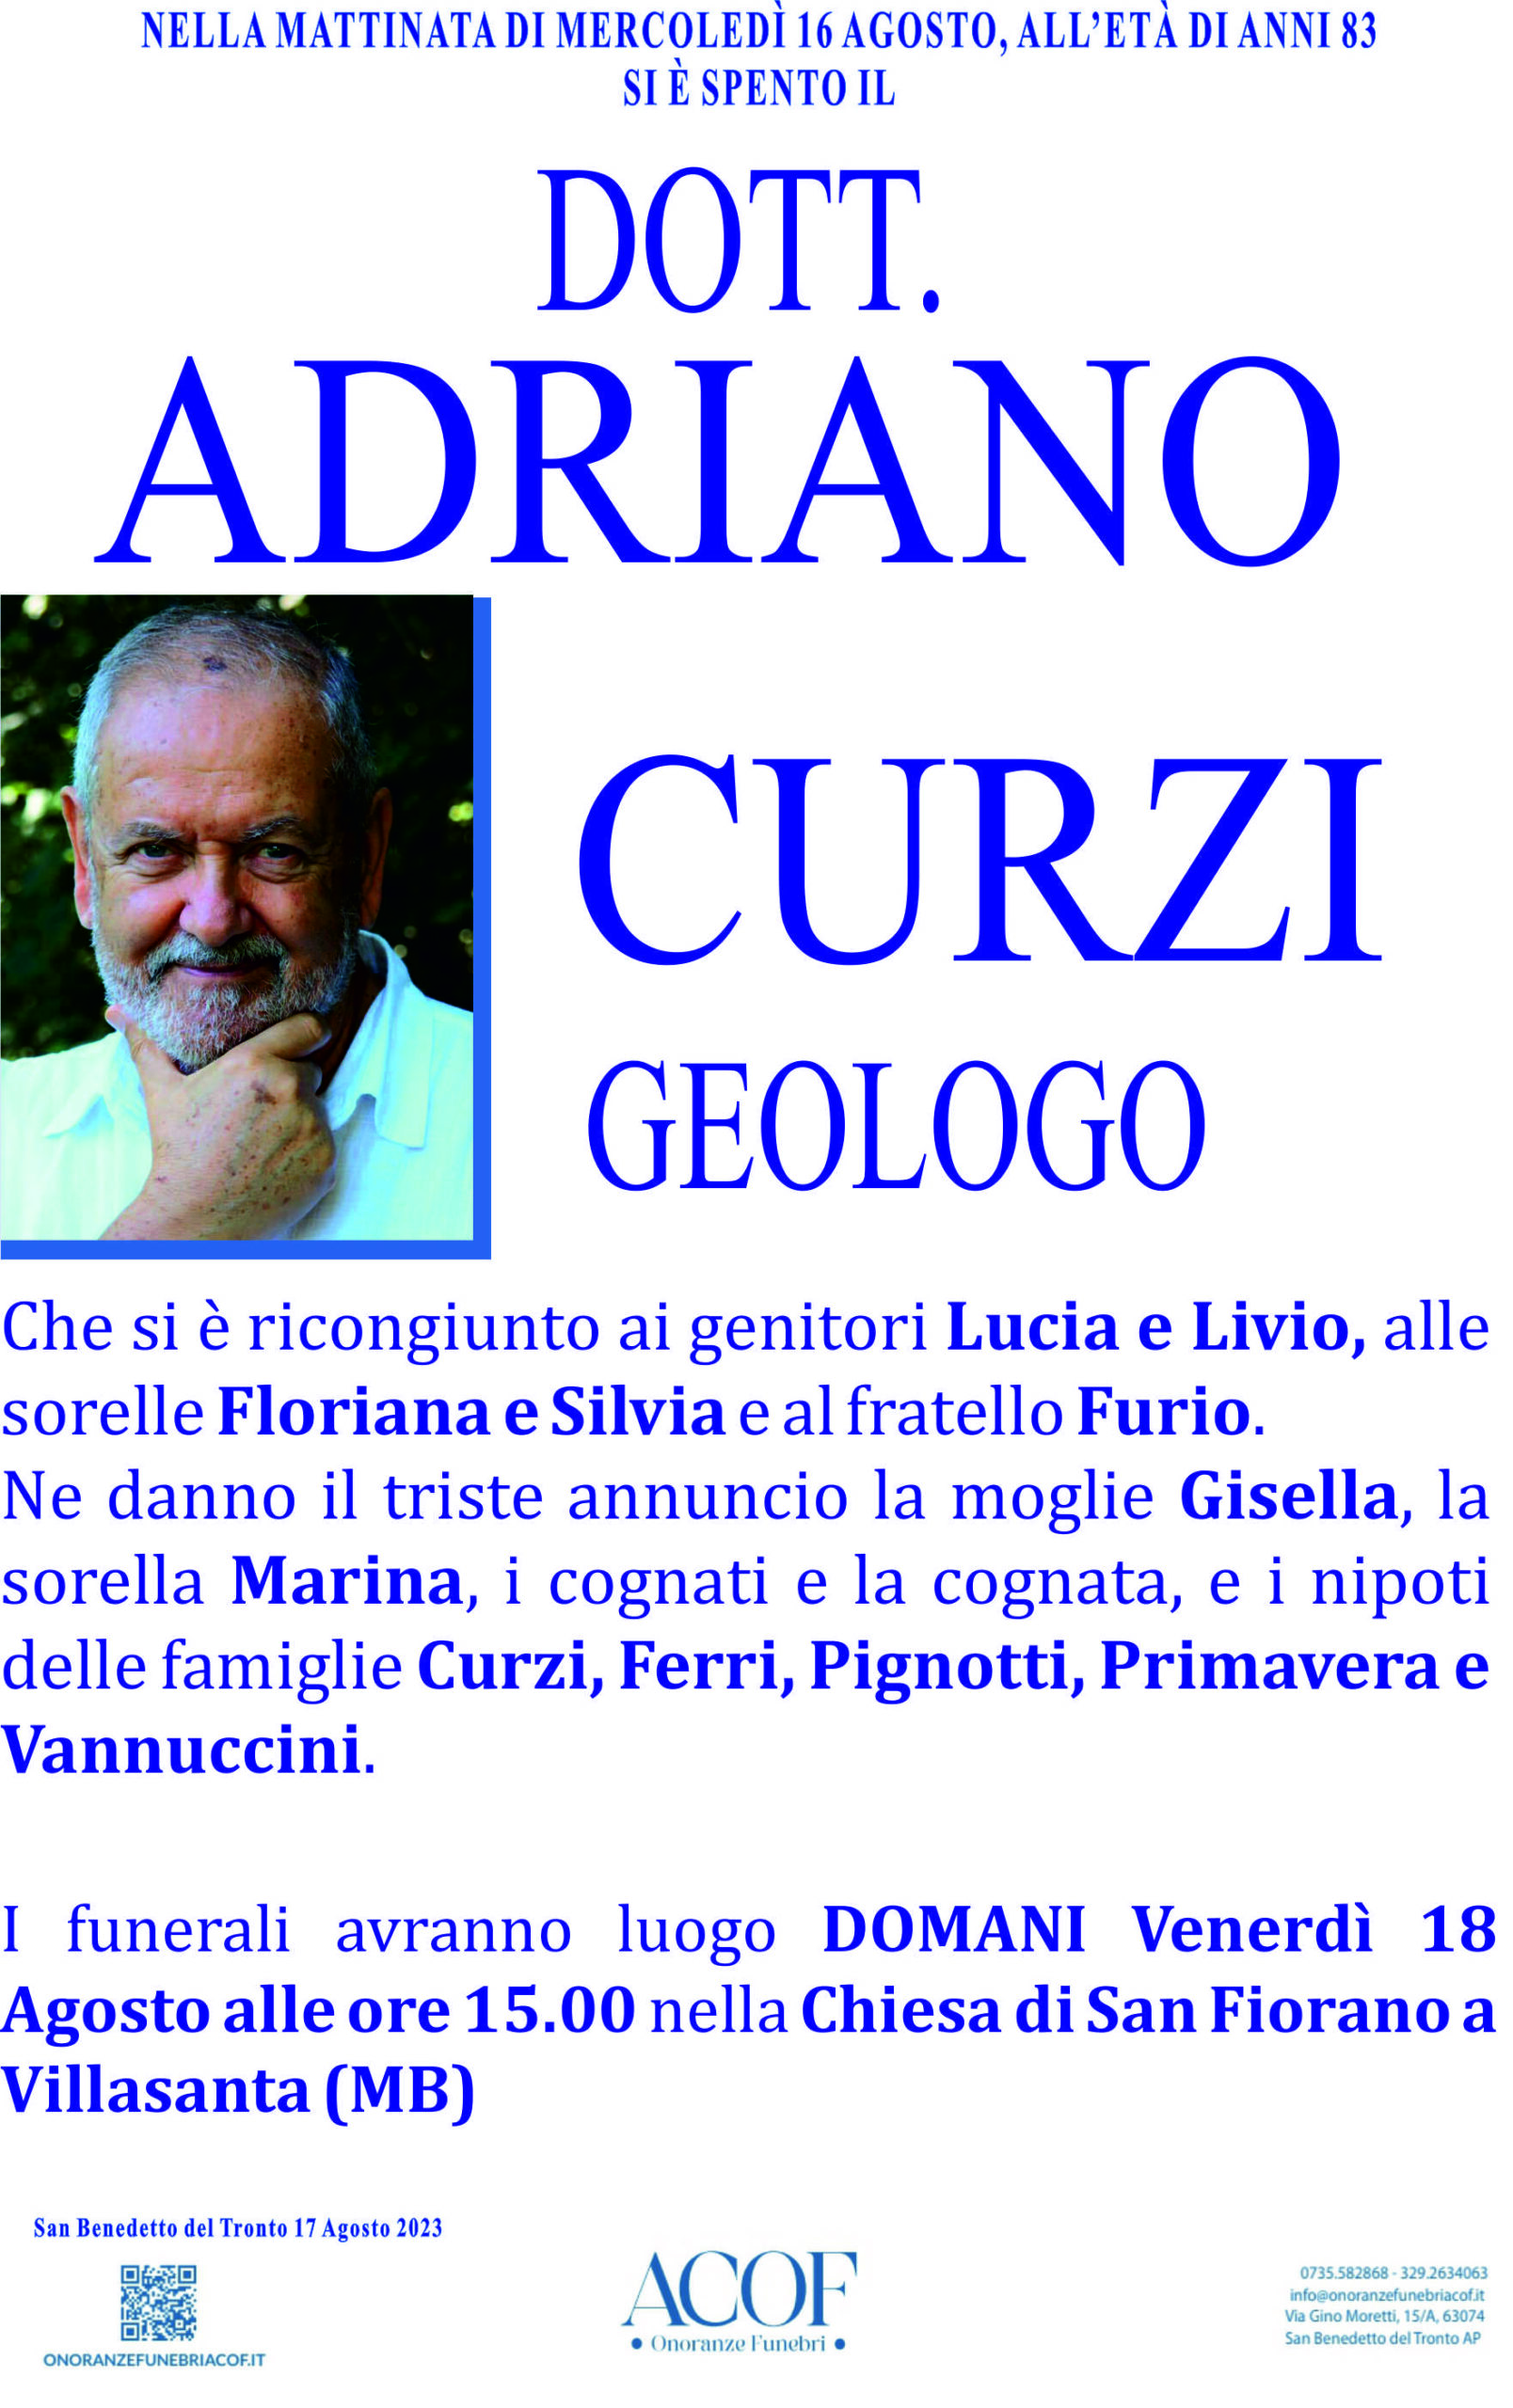 Adriano Curzi